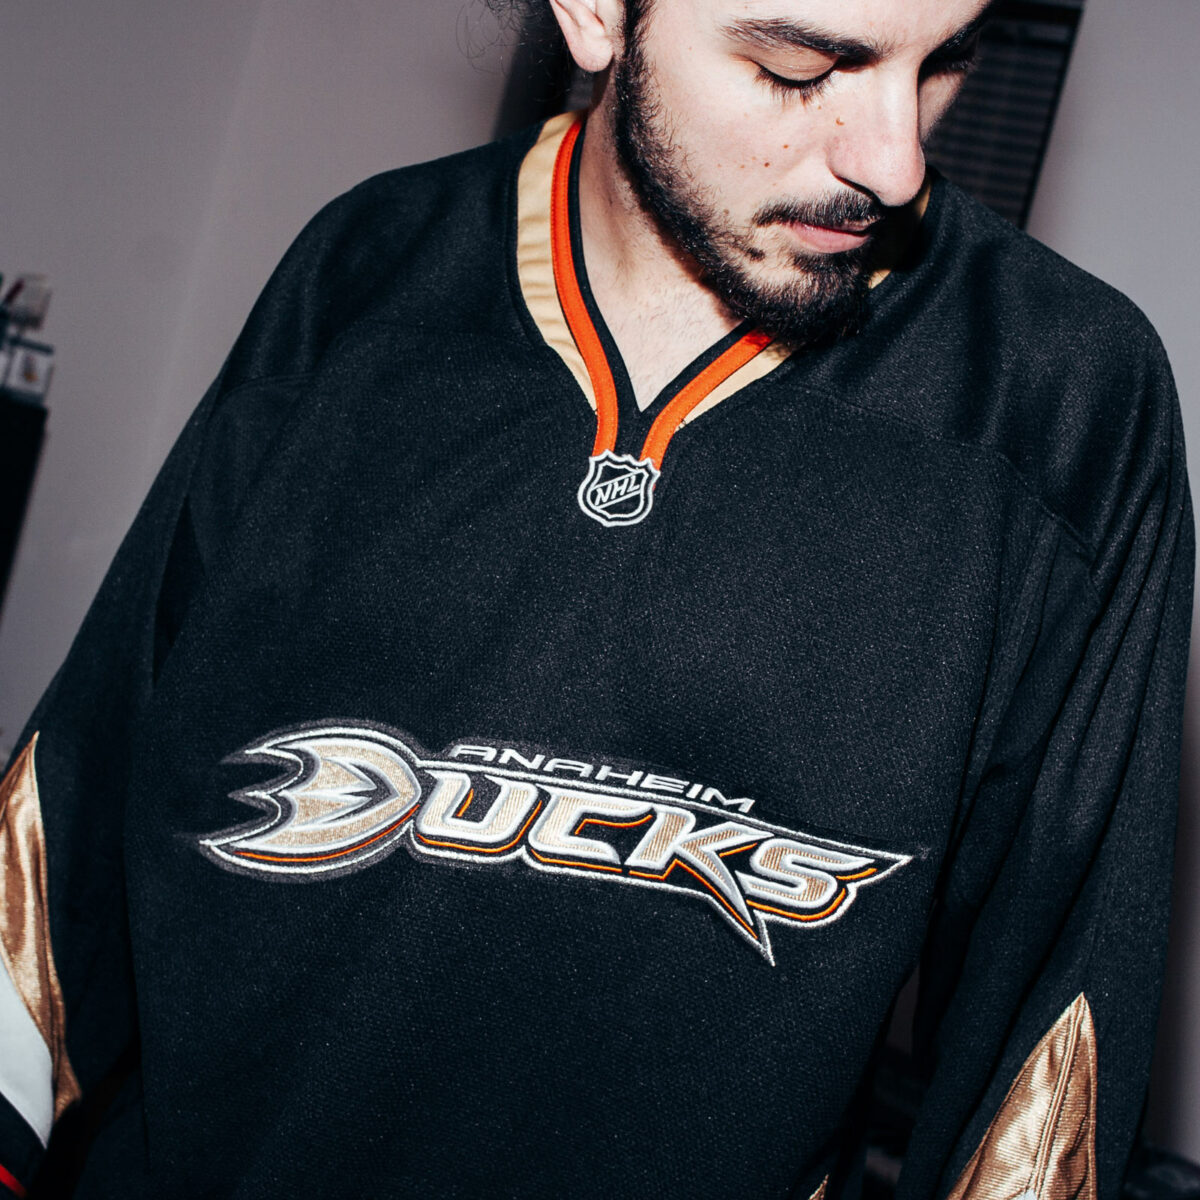 NHL Reebok Anaheim Ducks Jersey kaufen